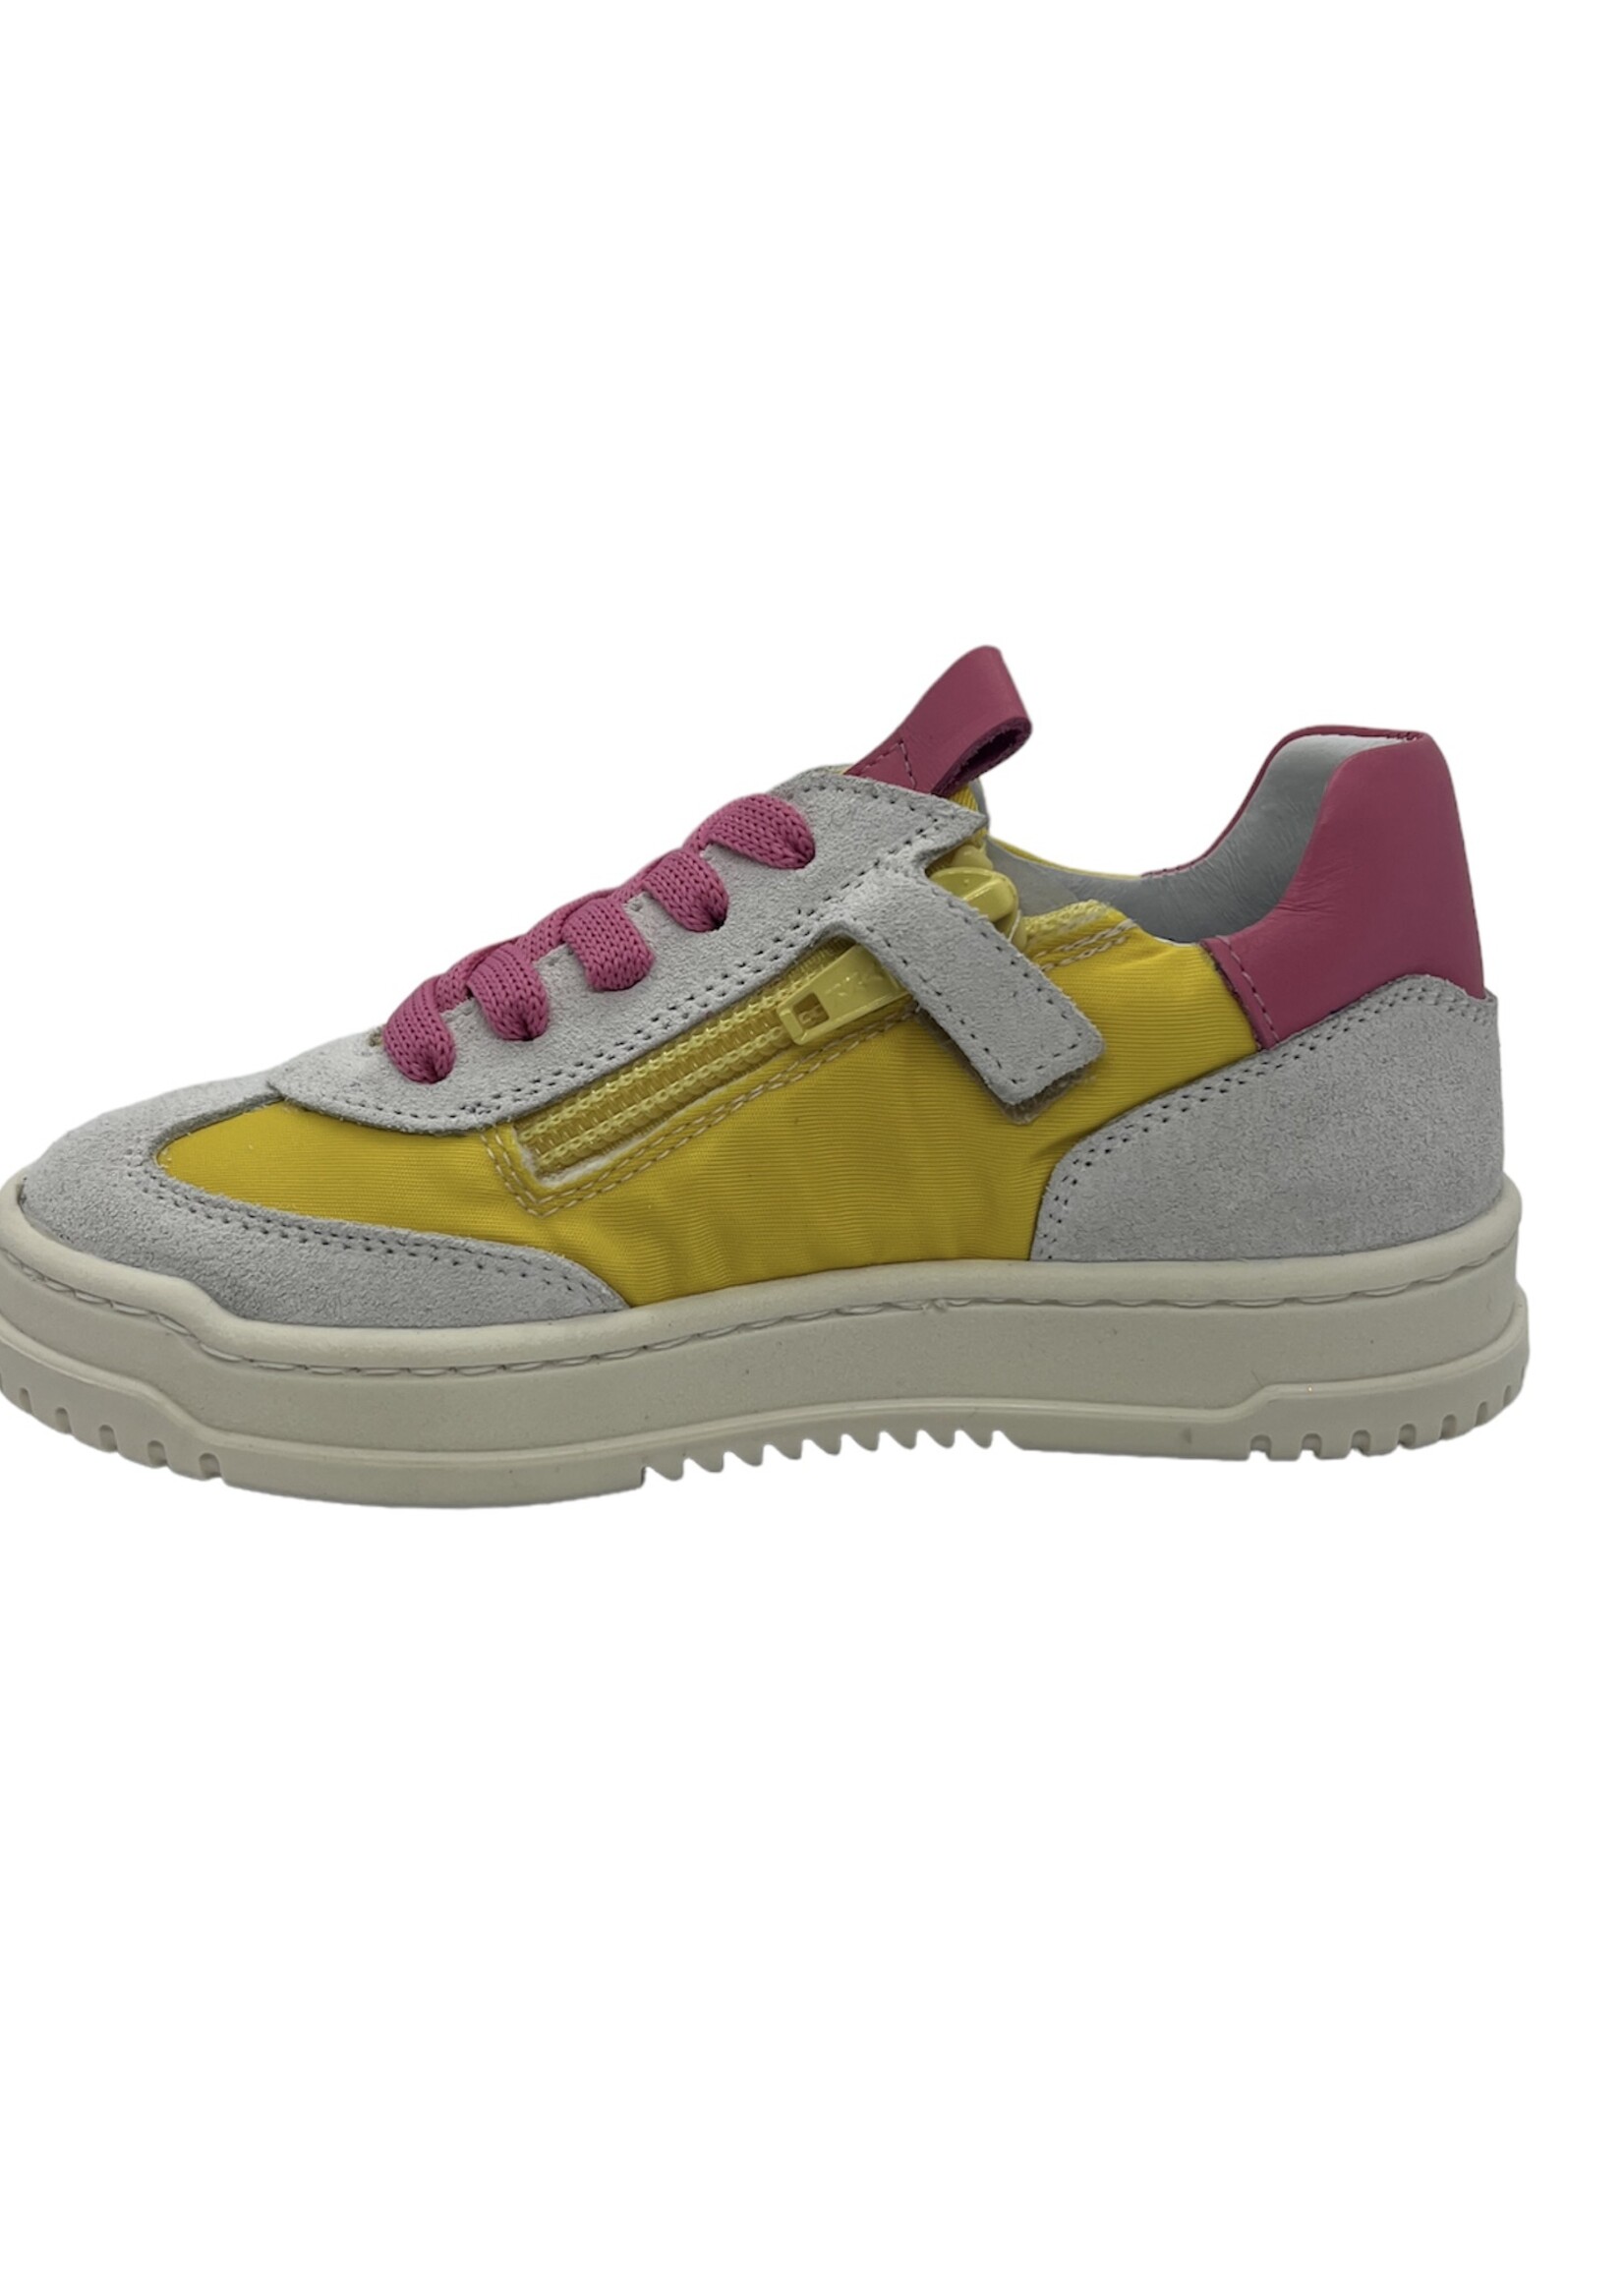 La Triboo 9107 sneaker geel/roze